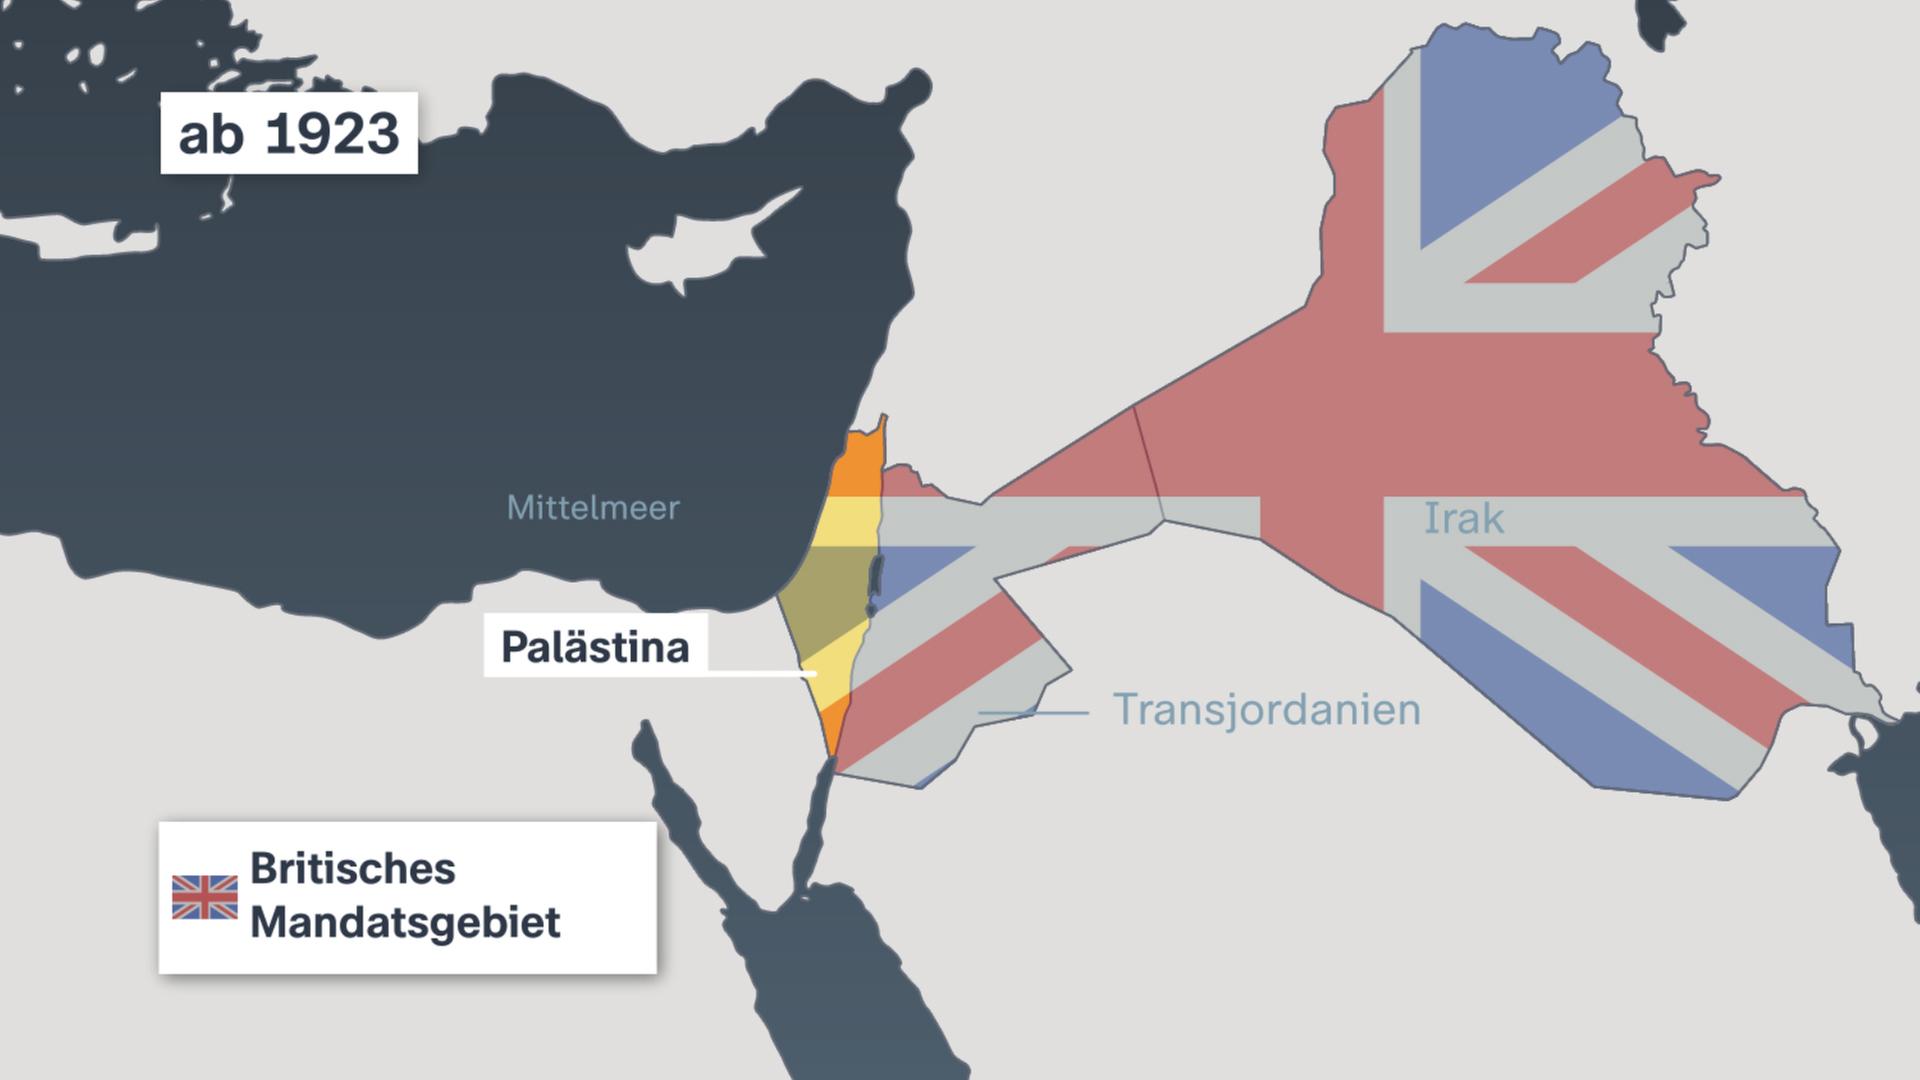 Die Karte zeigt die Region Palästina ab 1923, dass damals unter britischem Mandatsgebite stand. 